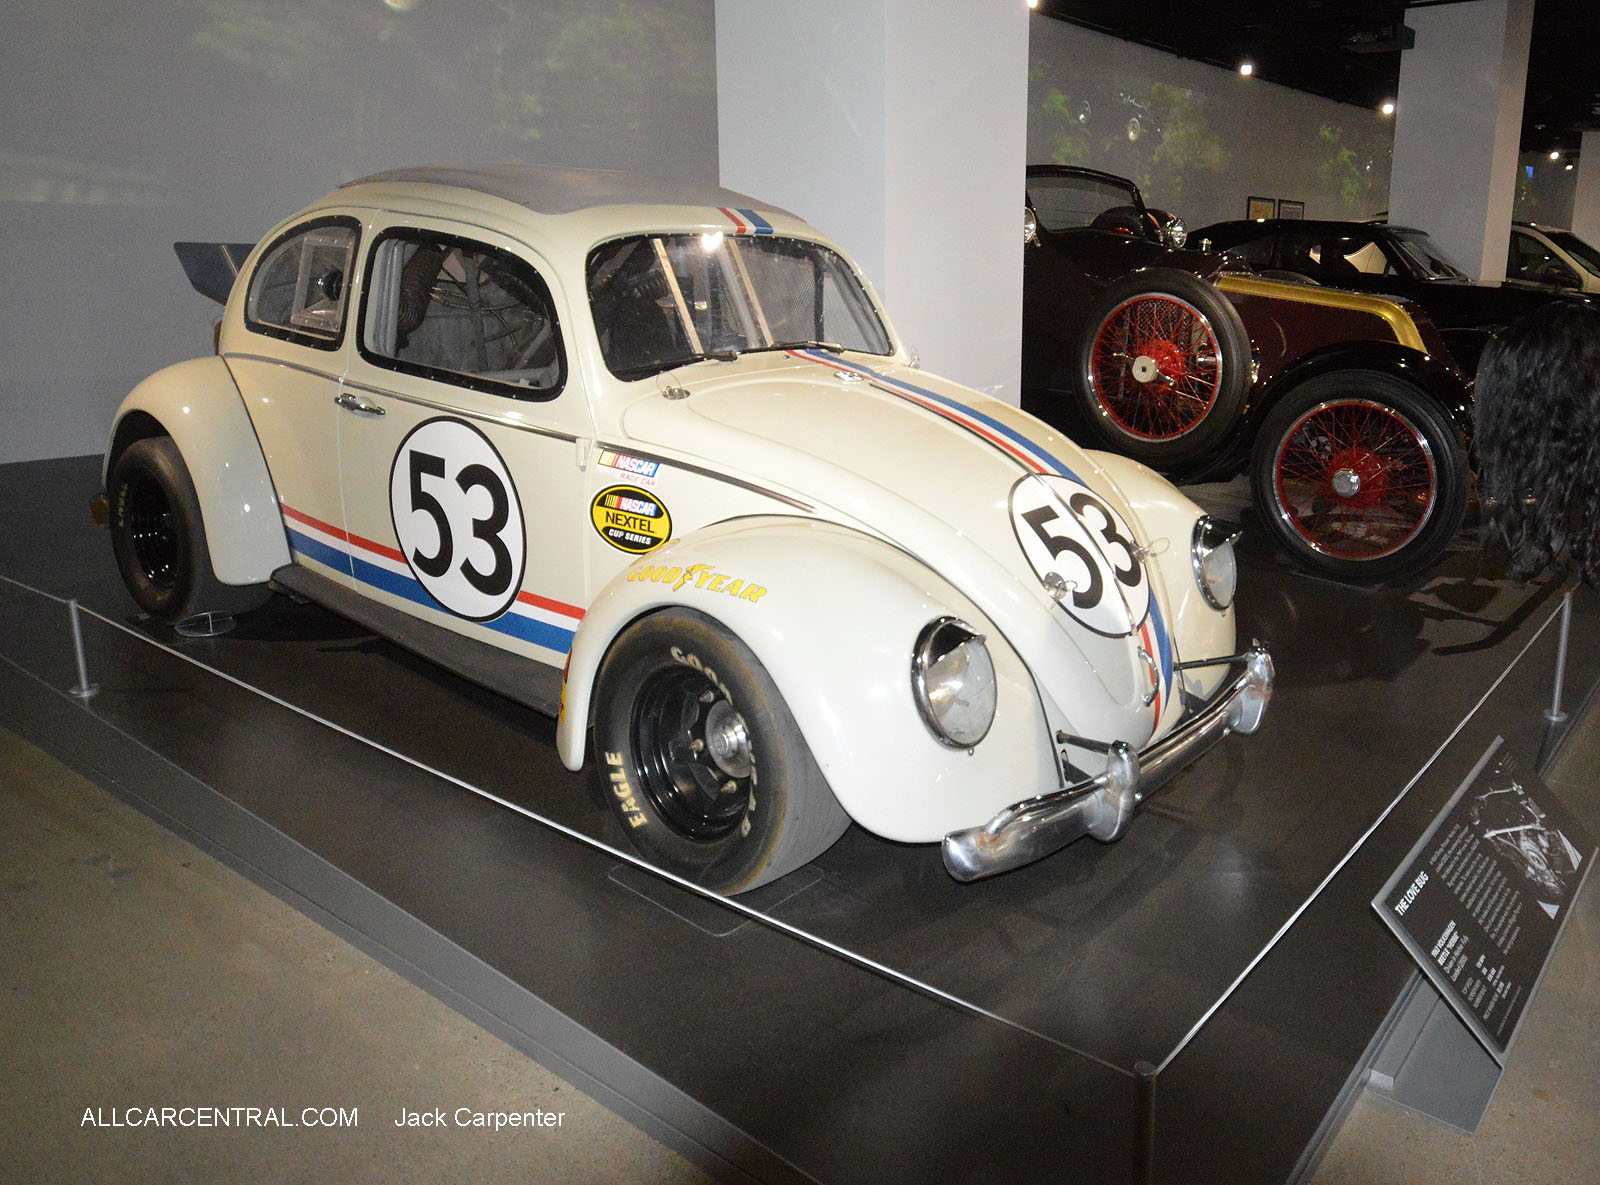   Volkswagen Beetle 1963 Herbie LoveBug  
Petersen Automotive Museum 2016